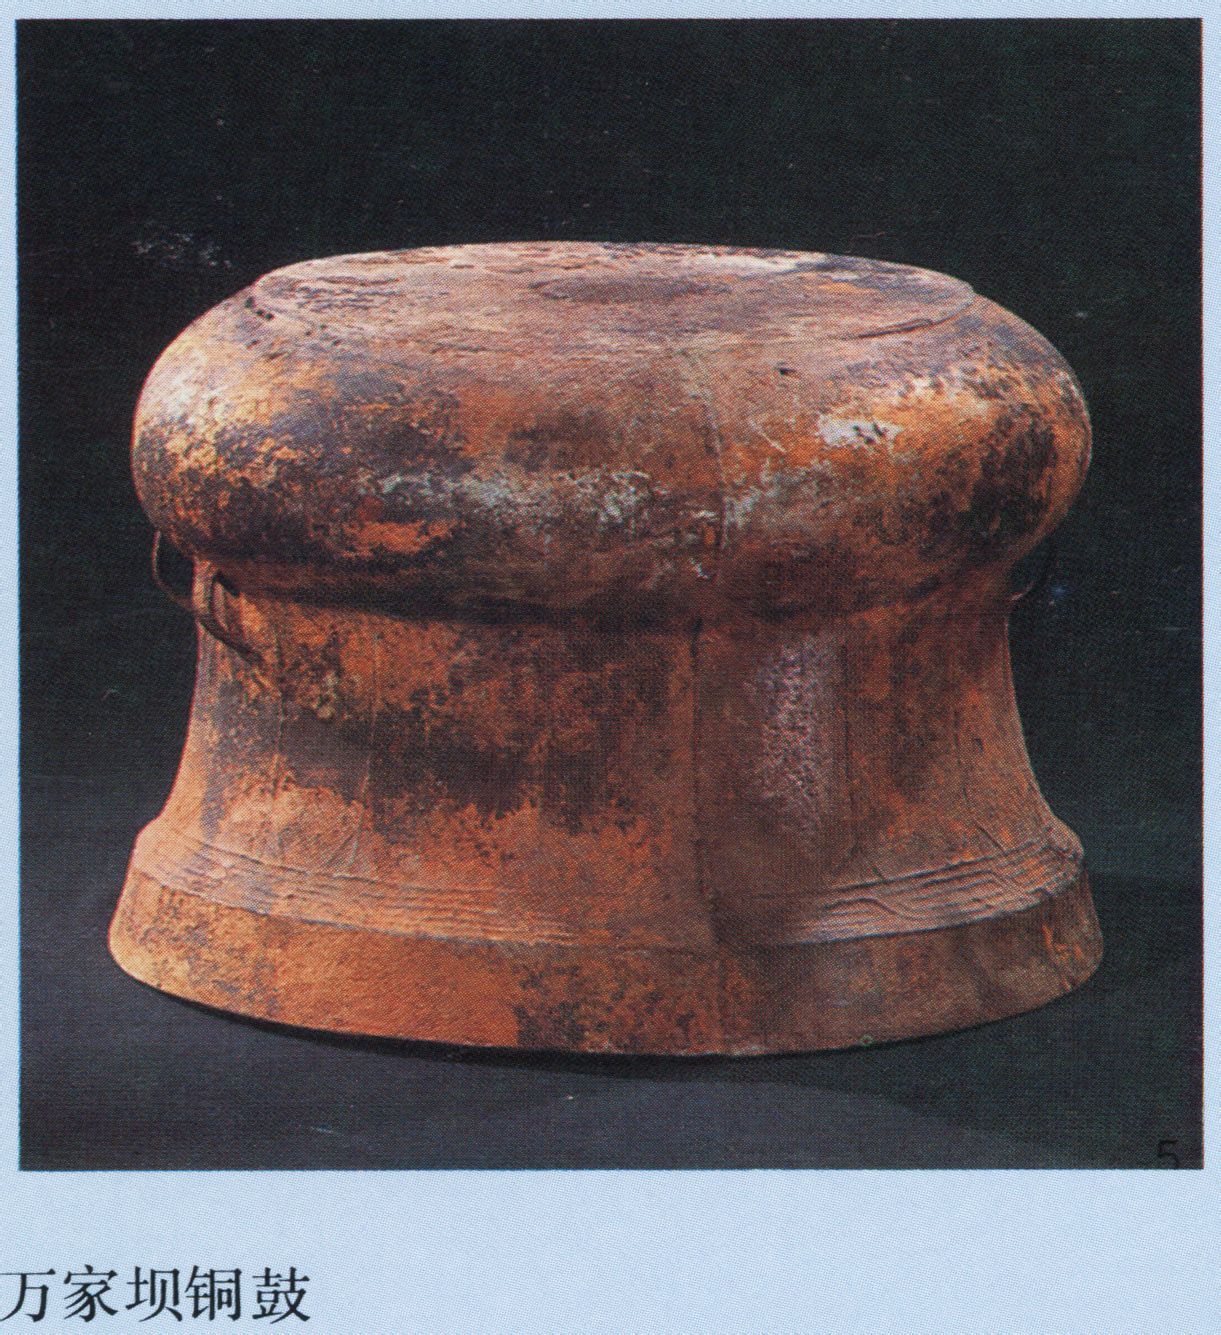 世界上最早的銅鼓